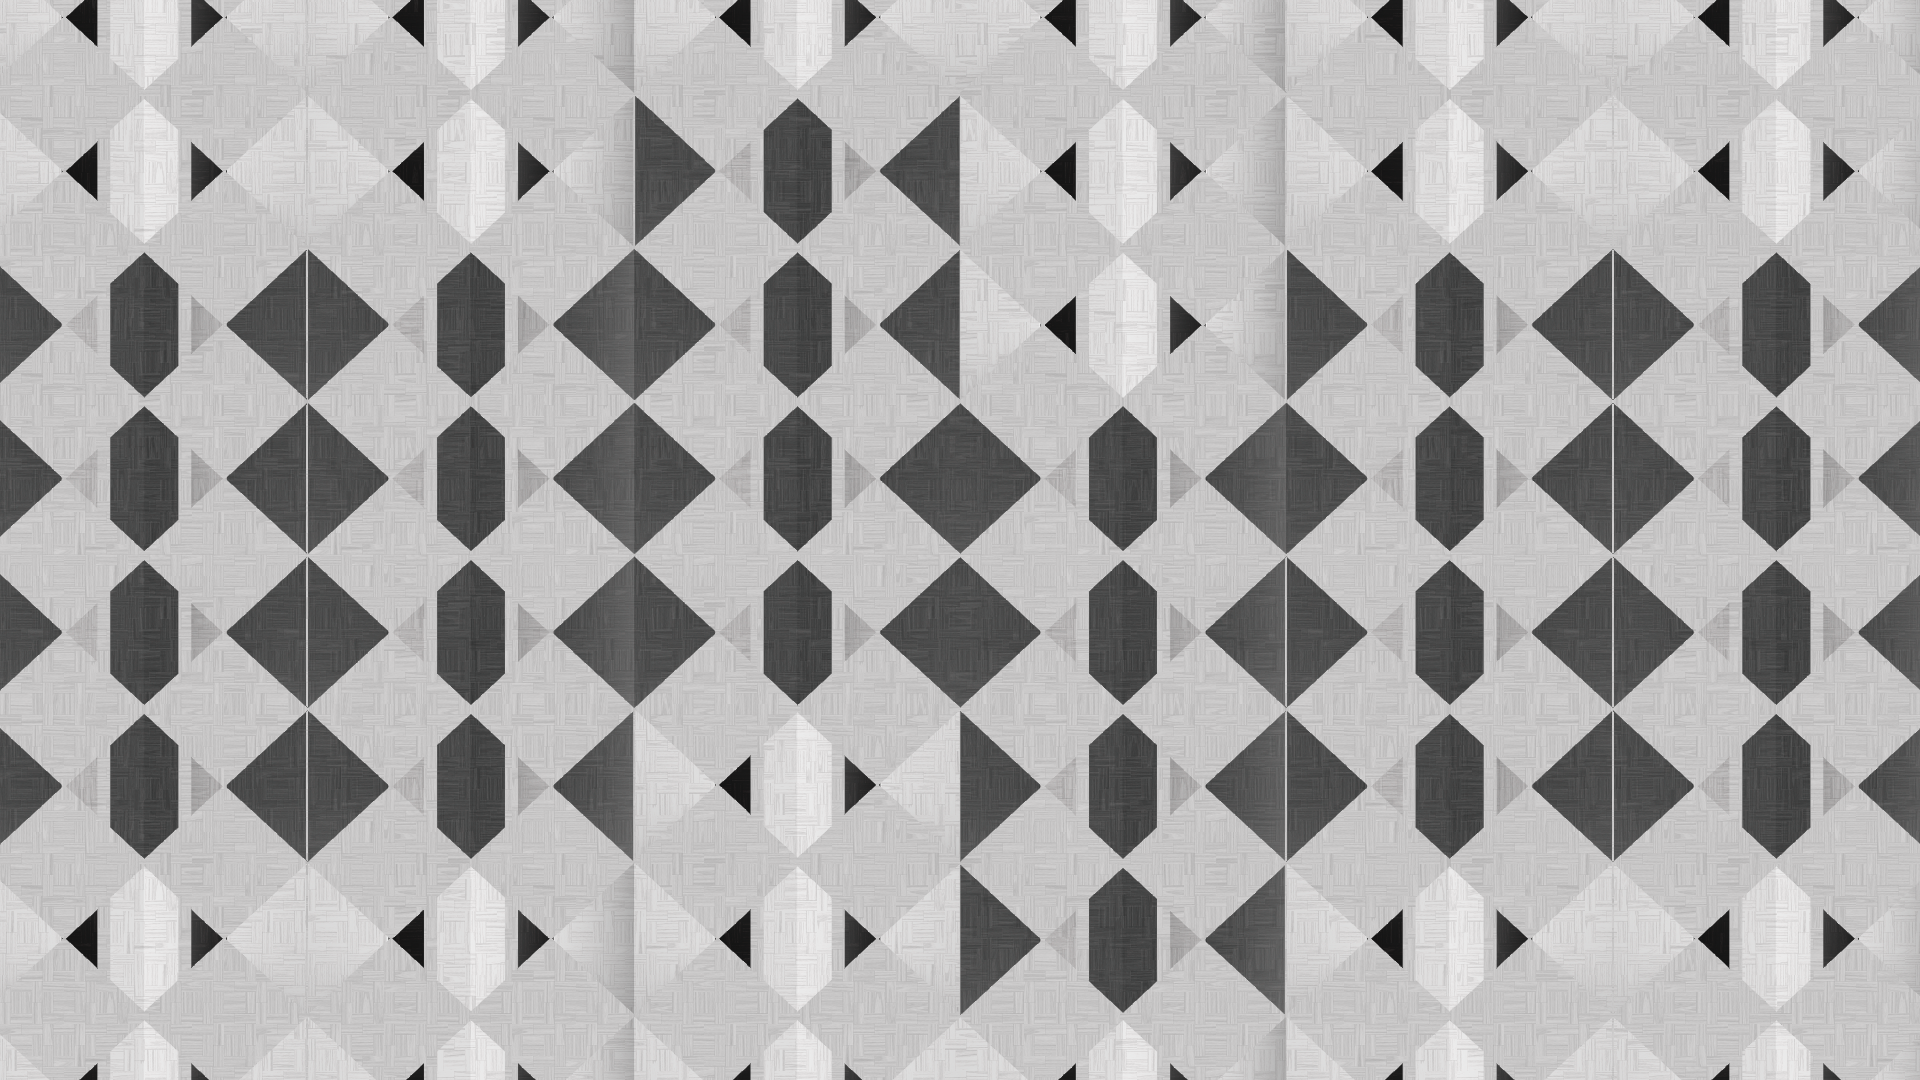 Square Tile Simplicity 1920x1080